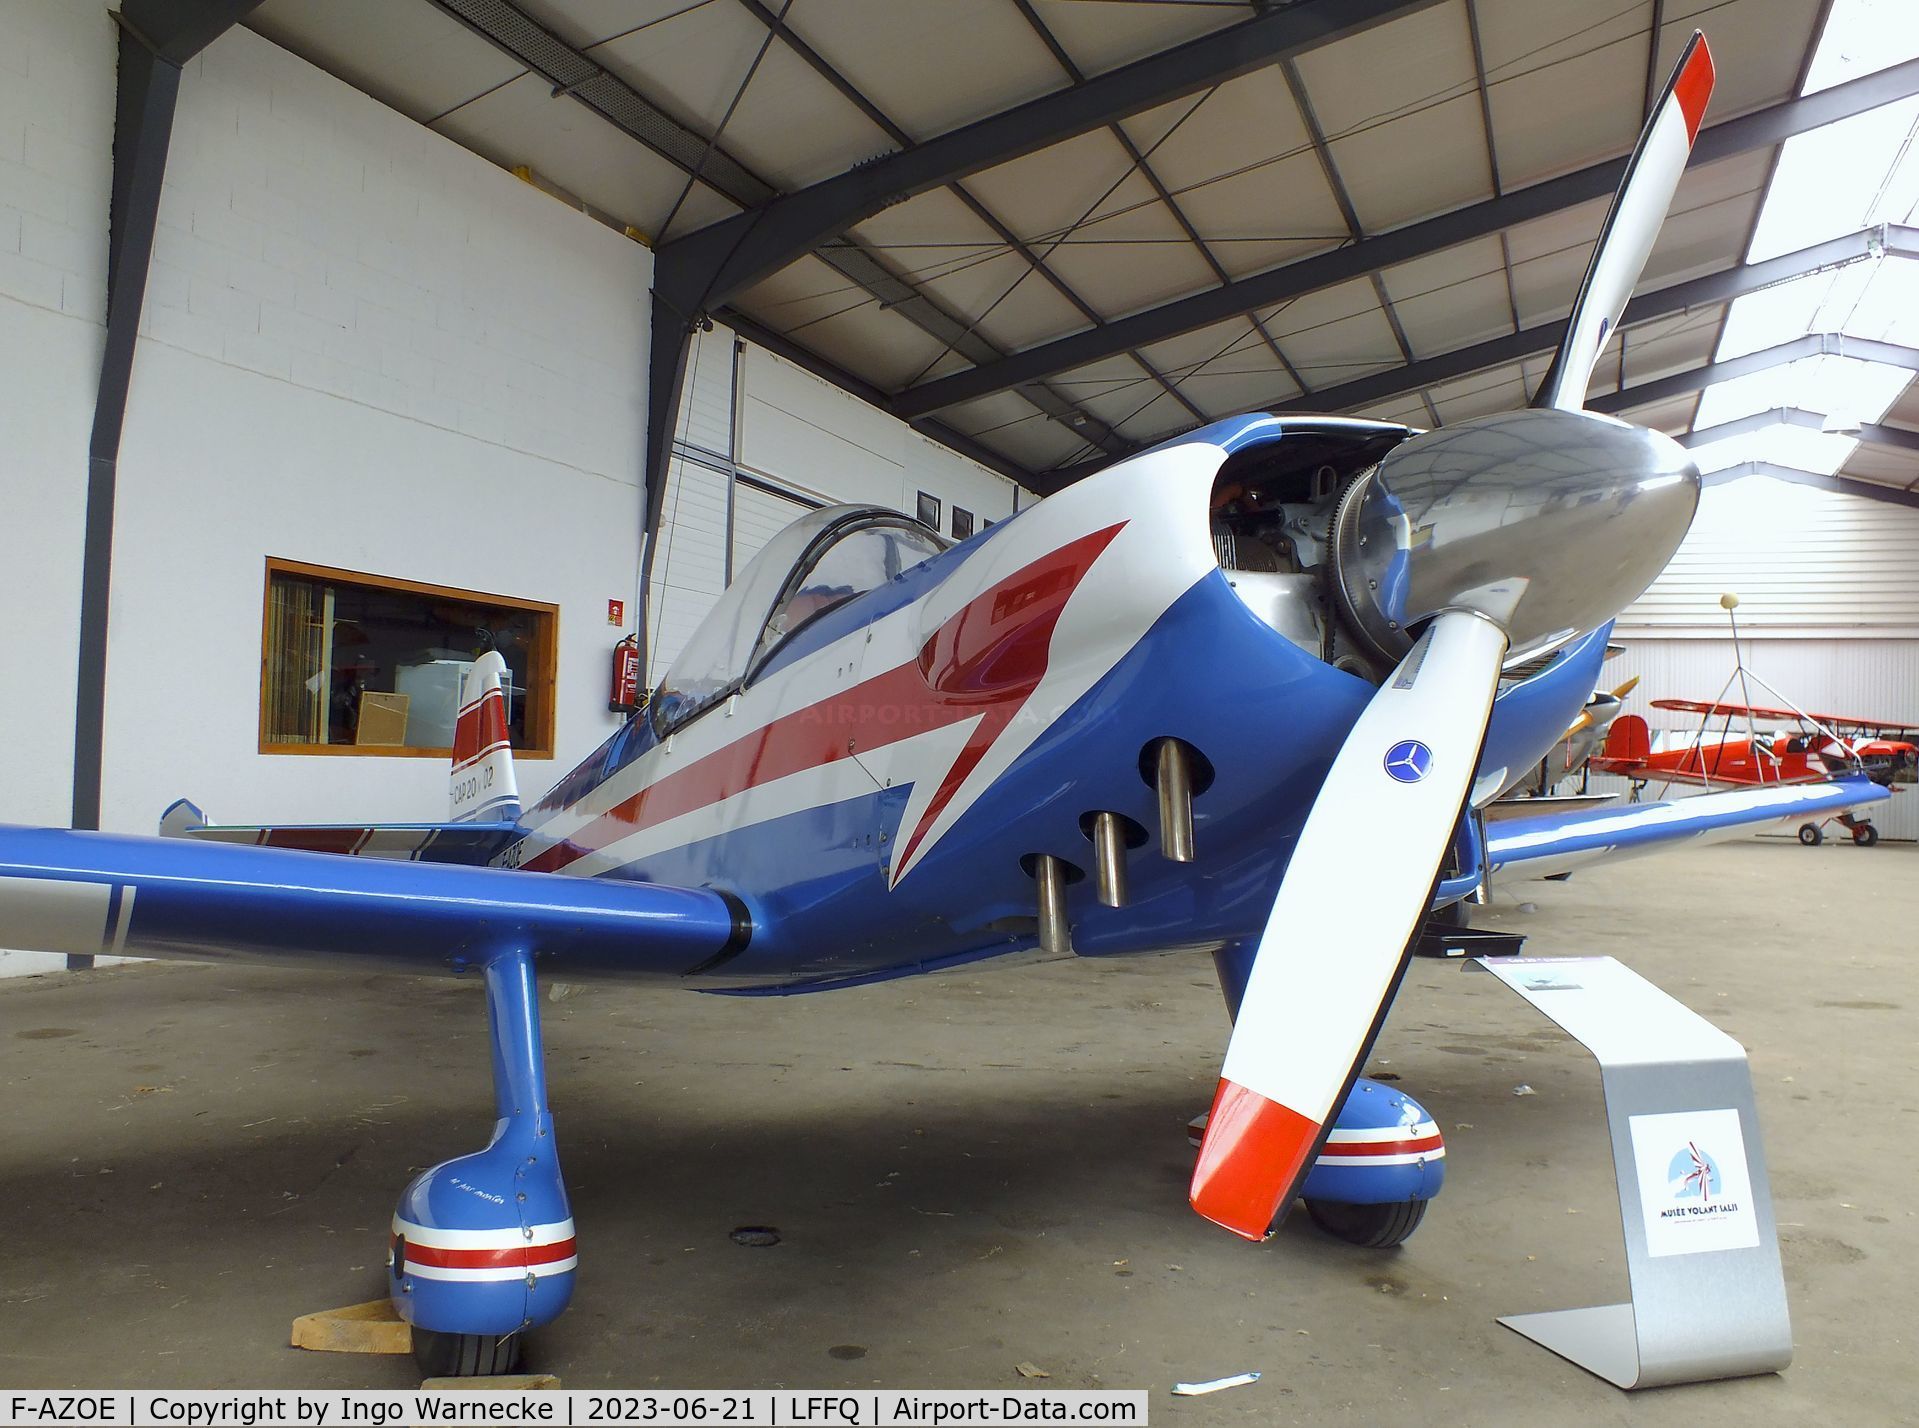 F-AZOE, Mudry CAP-20E C/N 02, Mudry CAP-20E at the Musee Volant Salis/Aero Vintage Academy, Cerny